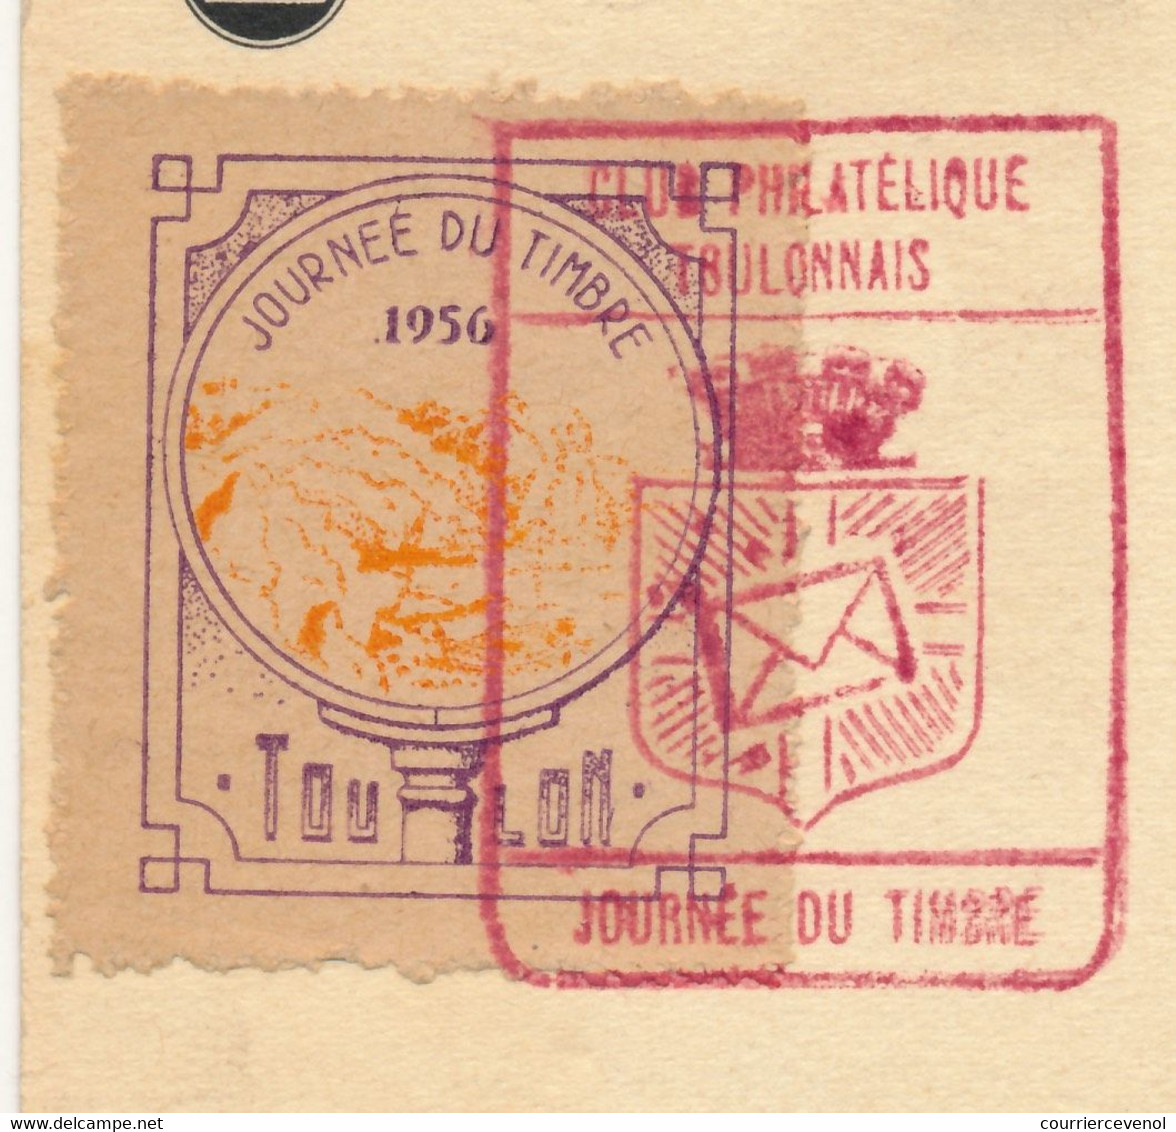 FRANCE => Vignette "Journée Du Timbre 1956 TOULON" Sur Carte Fédérale 12F + 3F François De Tassis - Toulon 1956 - Philatelic Fairs